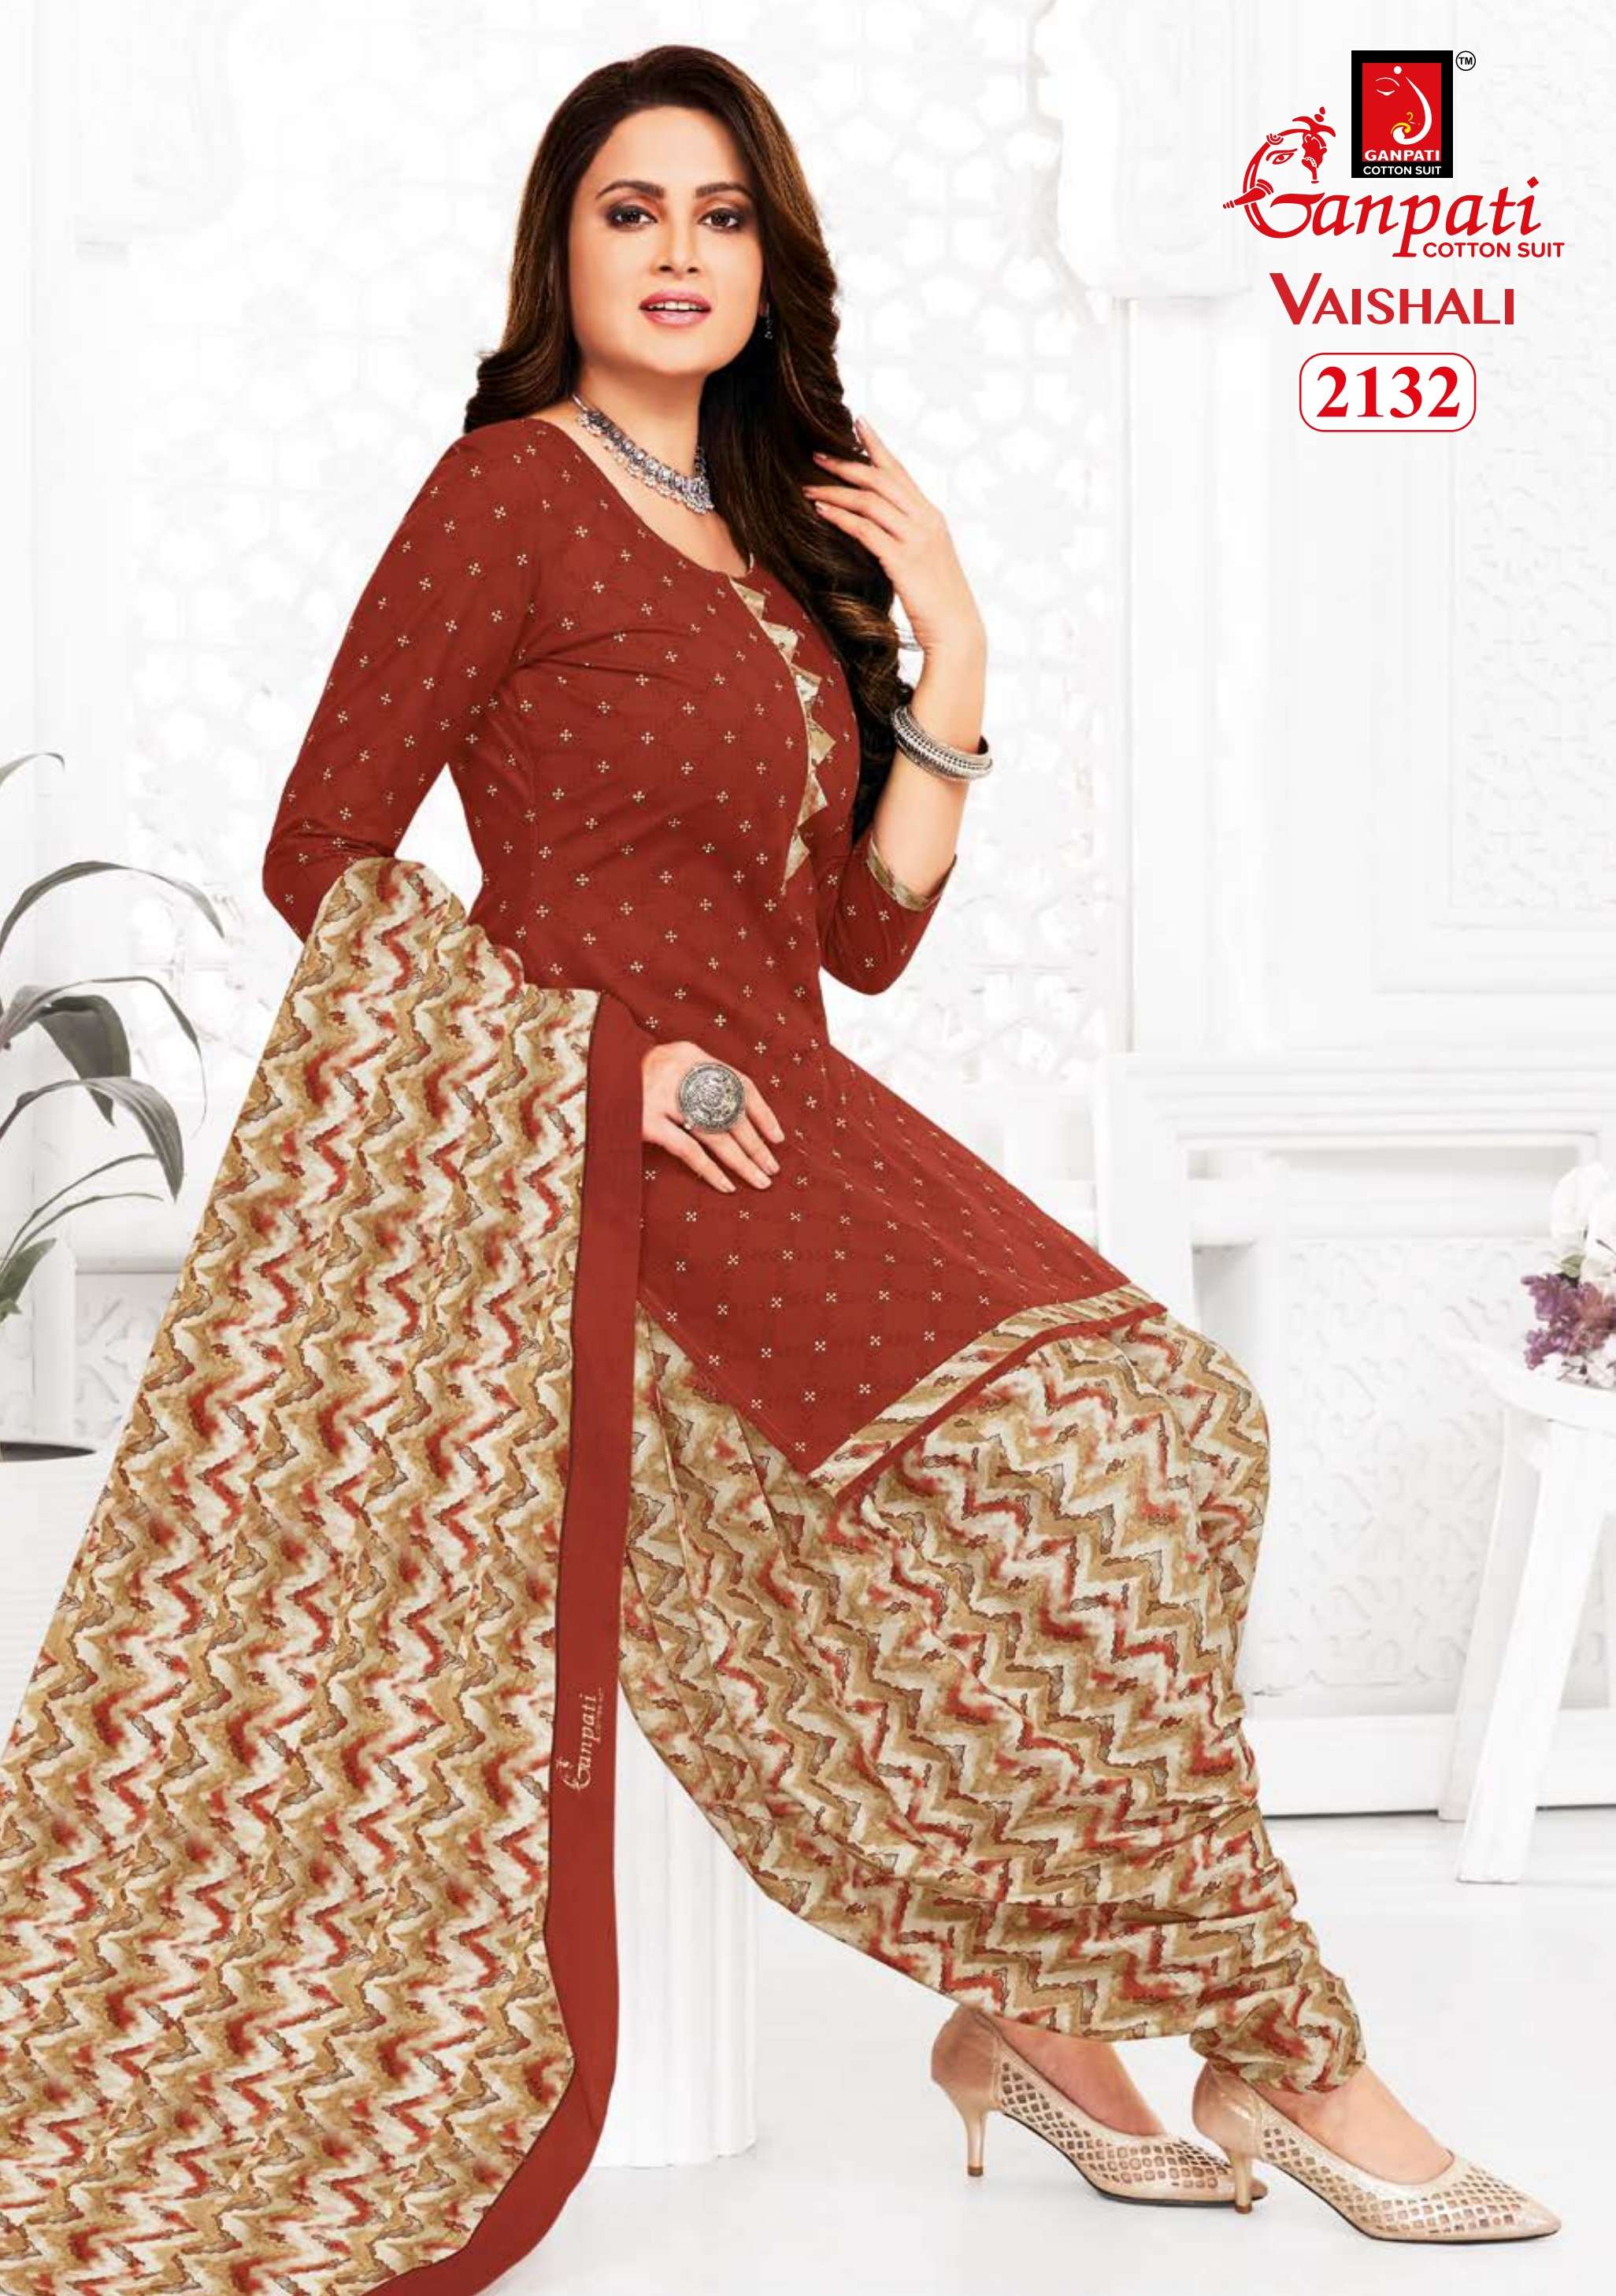 ganpati cotton suits vaishali patiyala vol-7 series patiyala cotton salwar kameez wholesaler surat gujarat